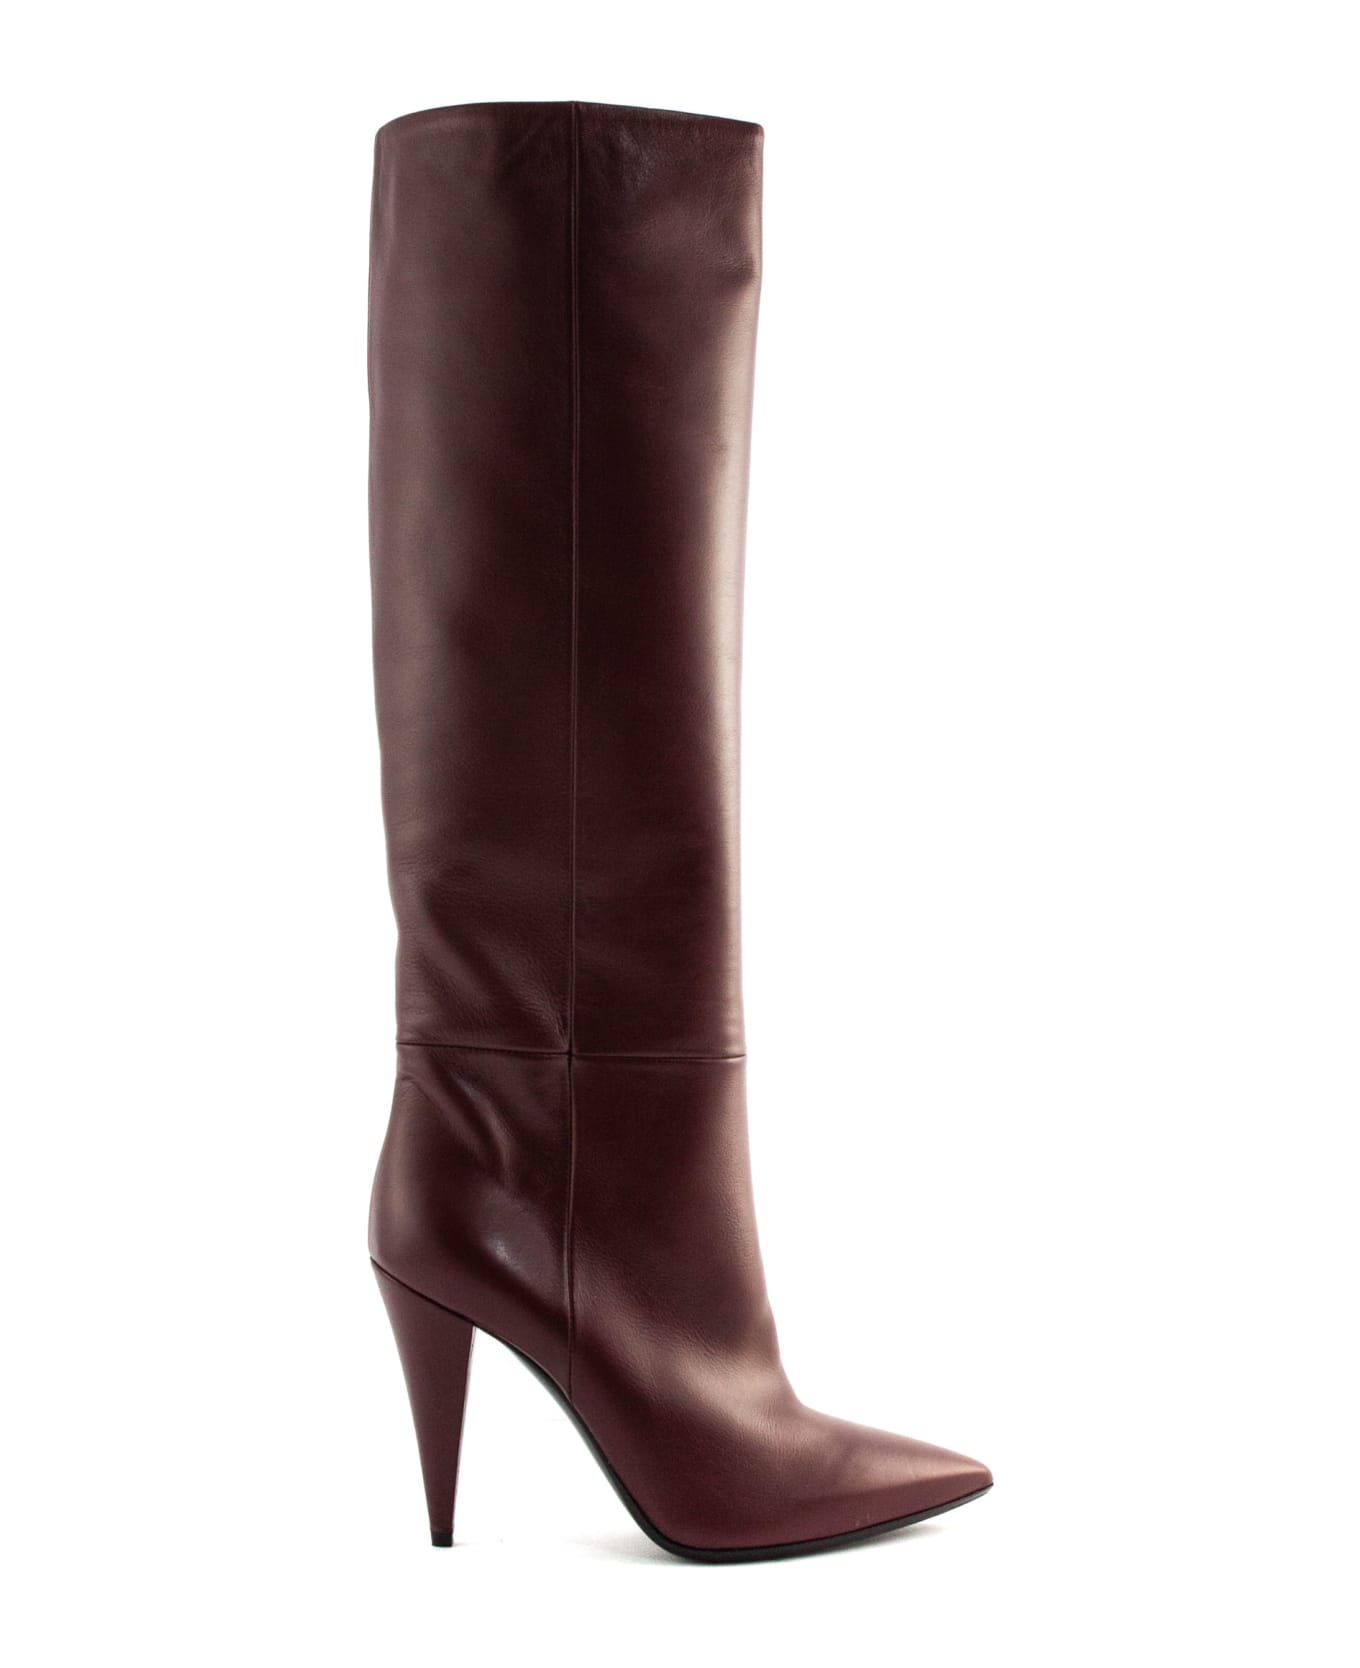 Strategia Bordeaux Leather High Boots - Bordo